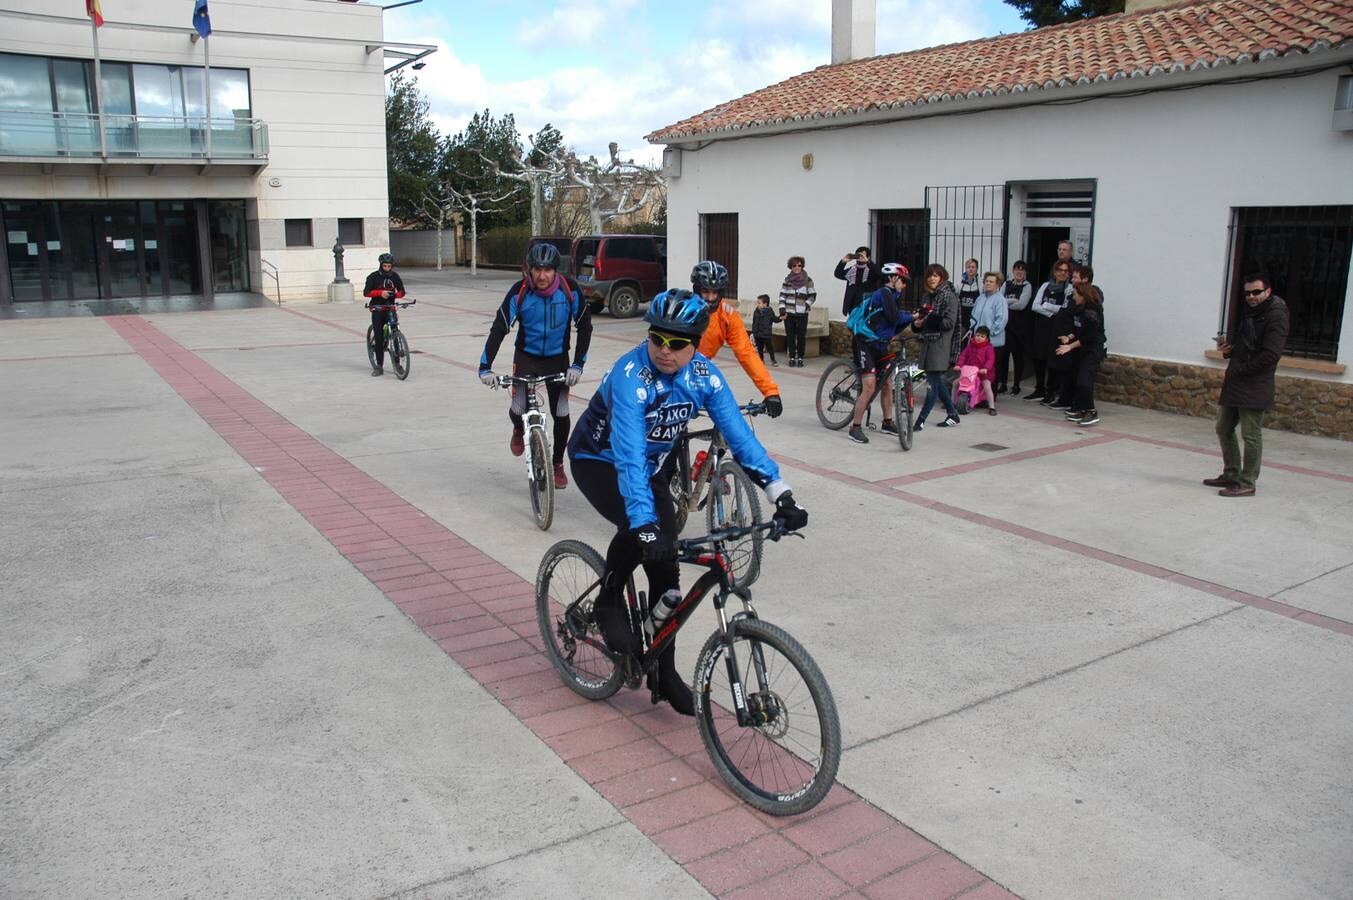 II marcha cicloturista Sierra de La Hez organizada por el colectivo El Redal en Movimiento. Después hubo degustación de zapatillas